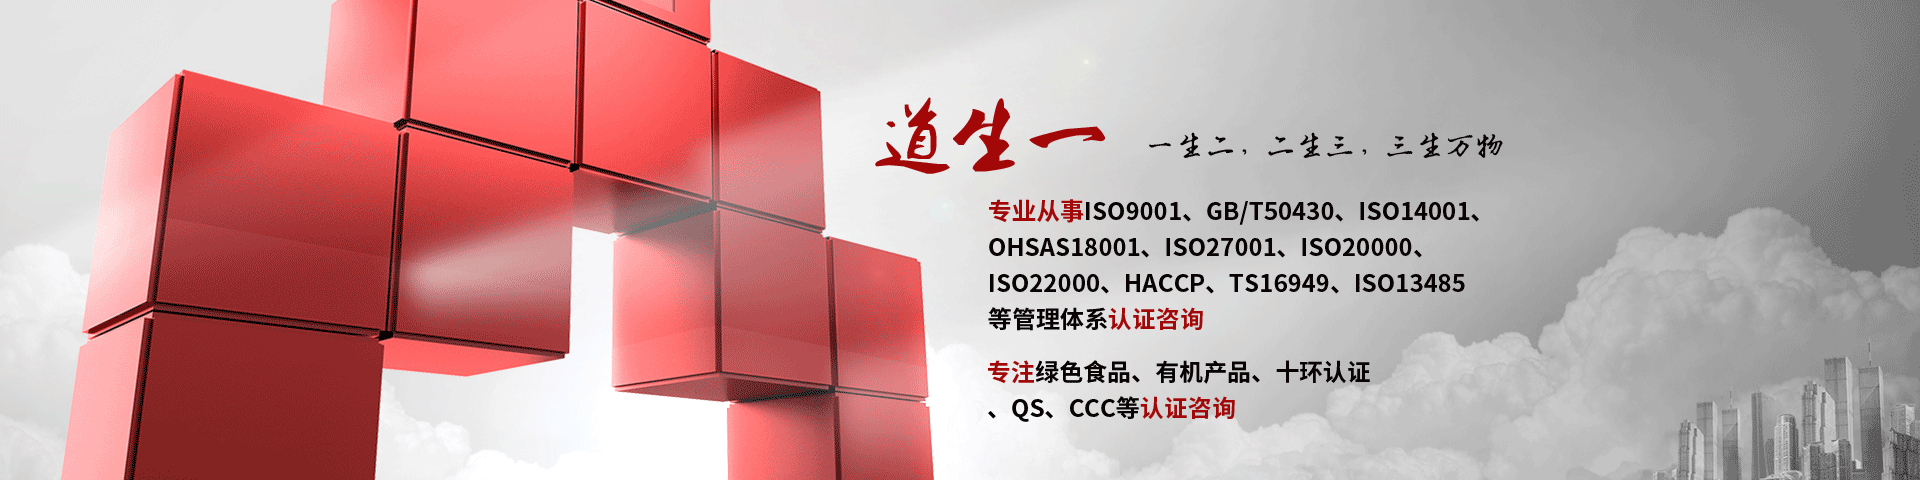 武汉ISO22000认证